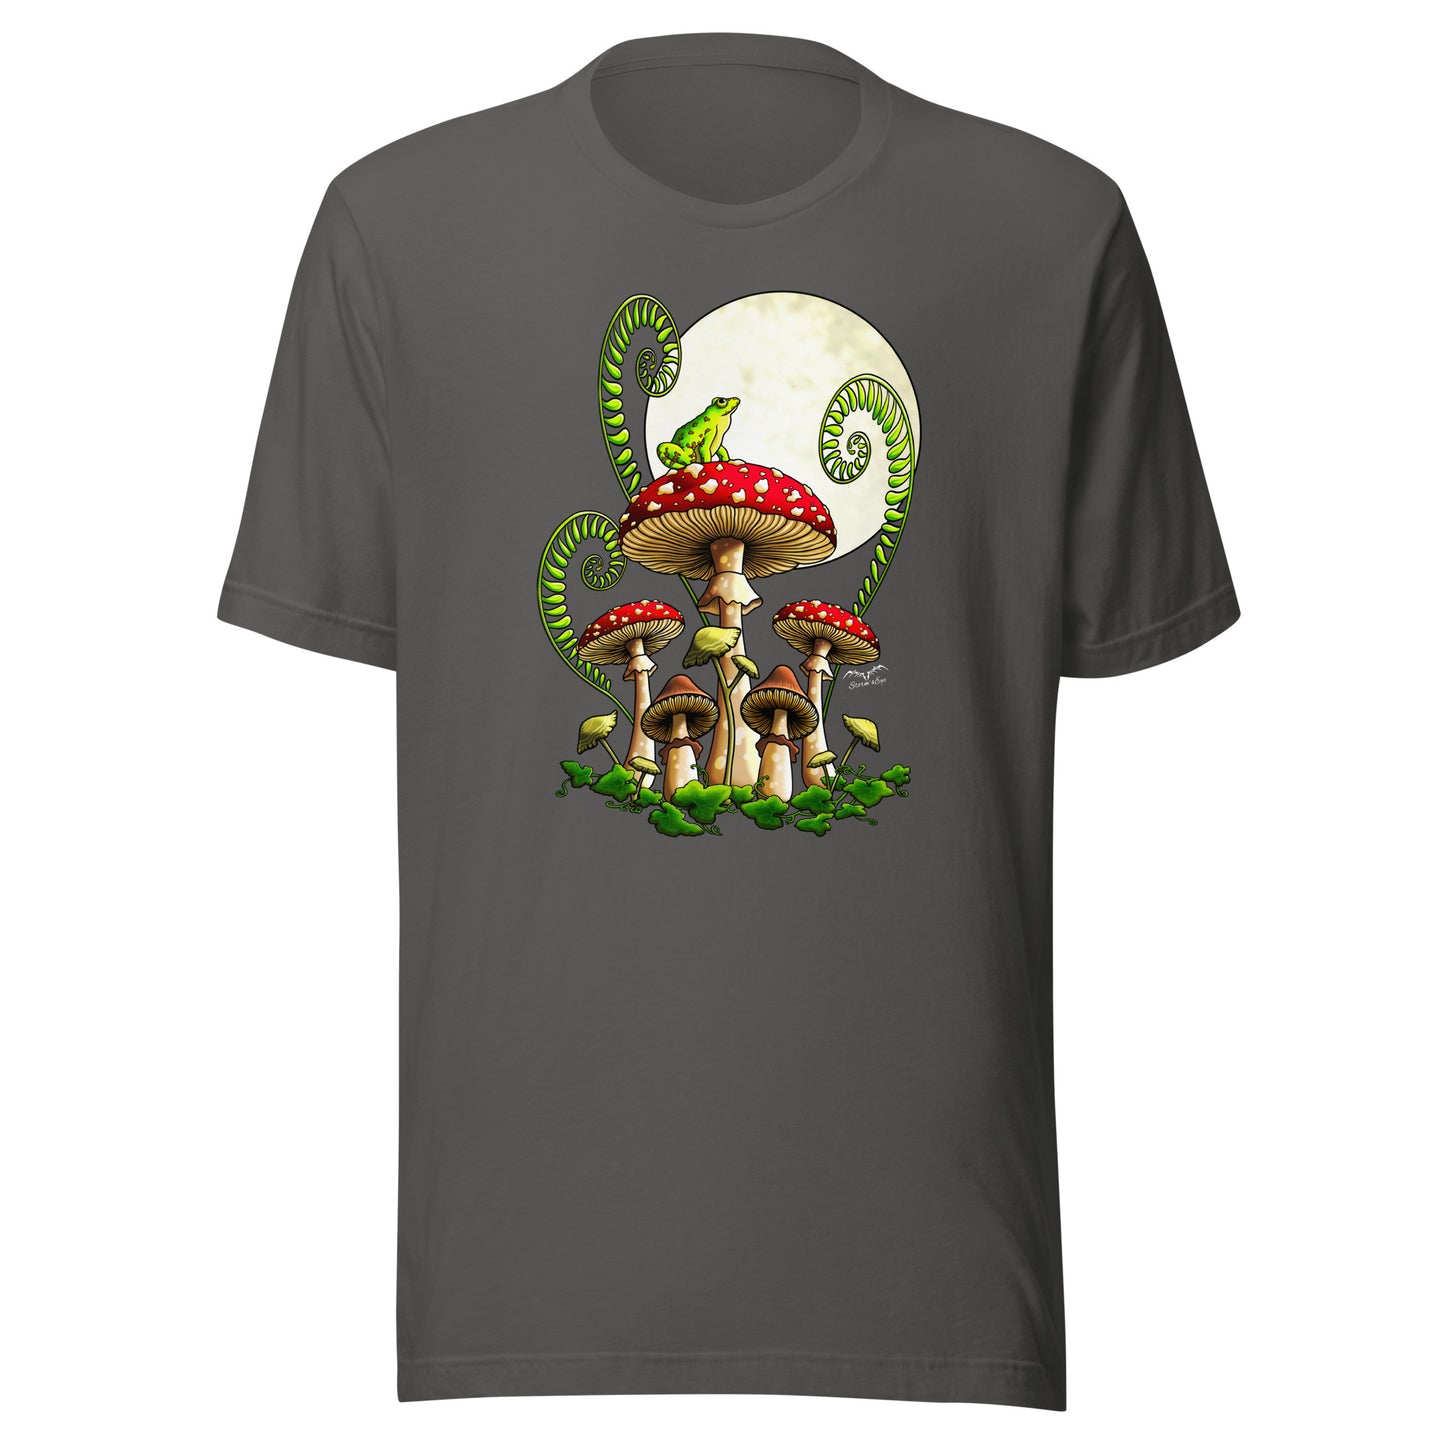 Moonlight Mushrooms T-Shirt – Weiches Cottage Core-Shirt mit Froschpilz und Mond